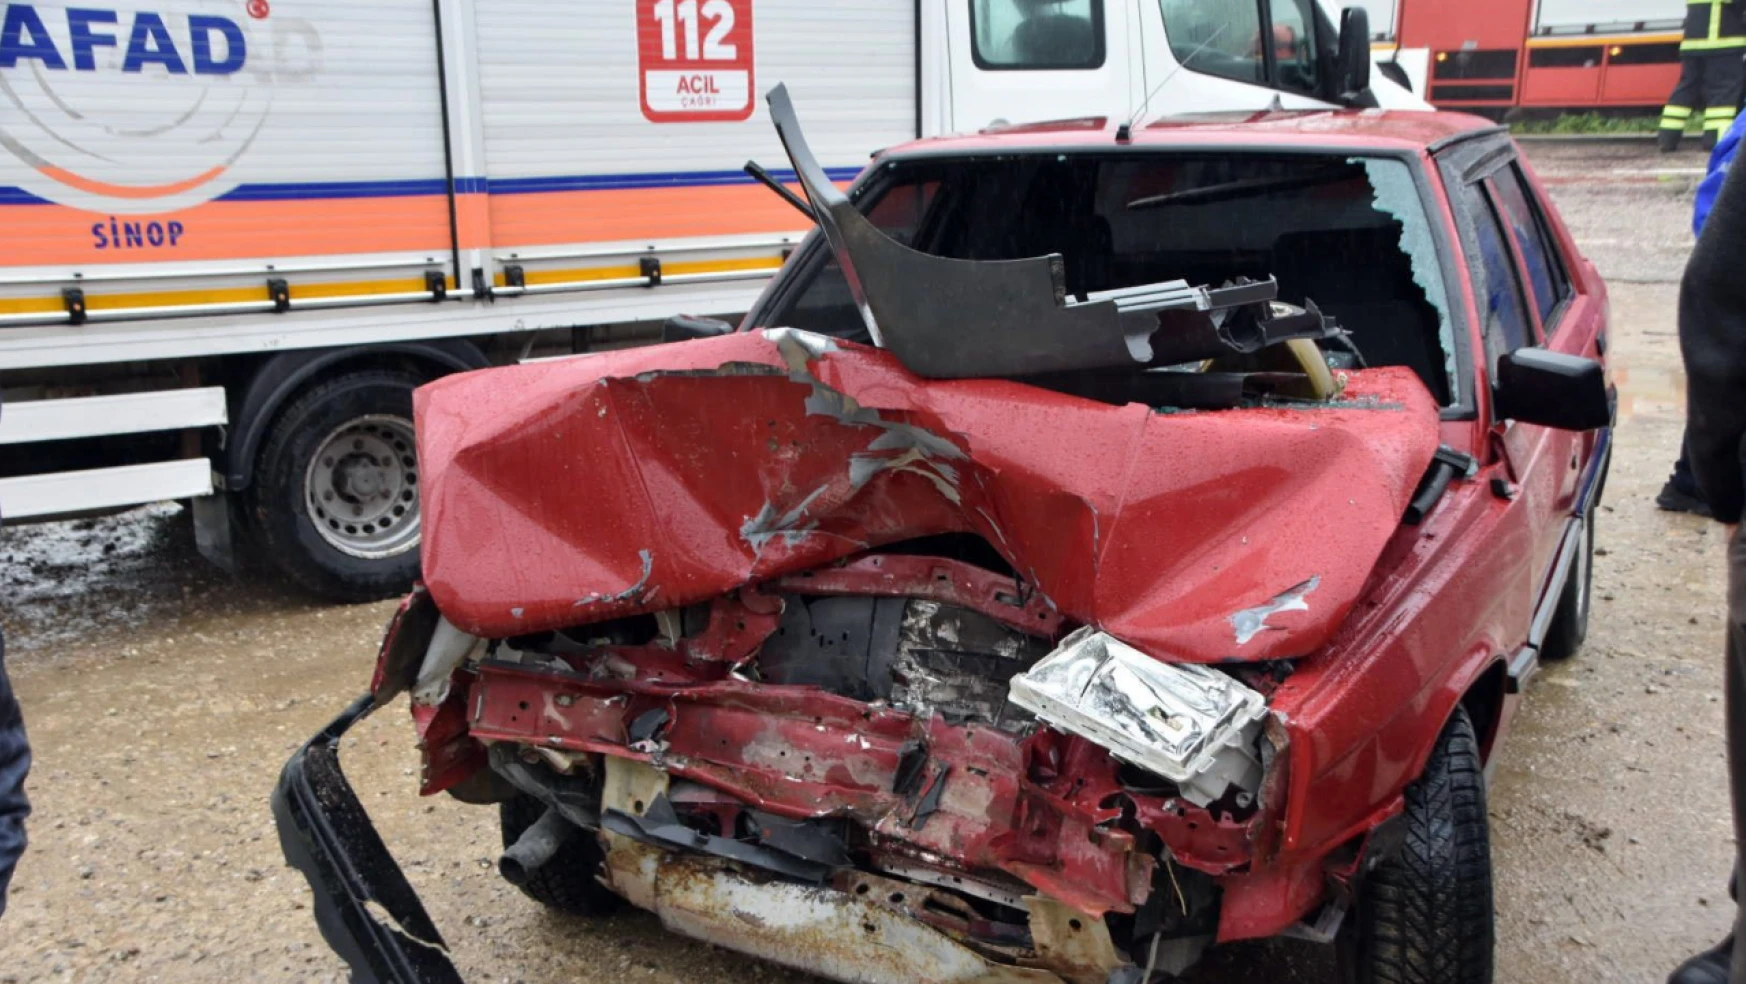 Sinop'ta kaza: traktör ve otomobil çarpıştı